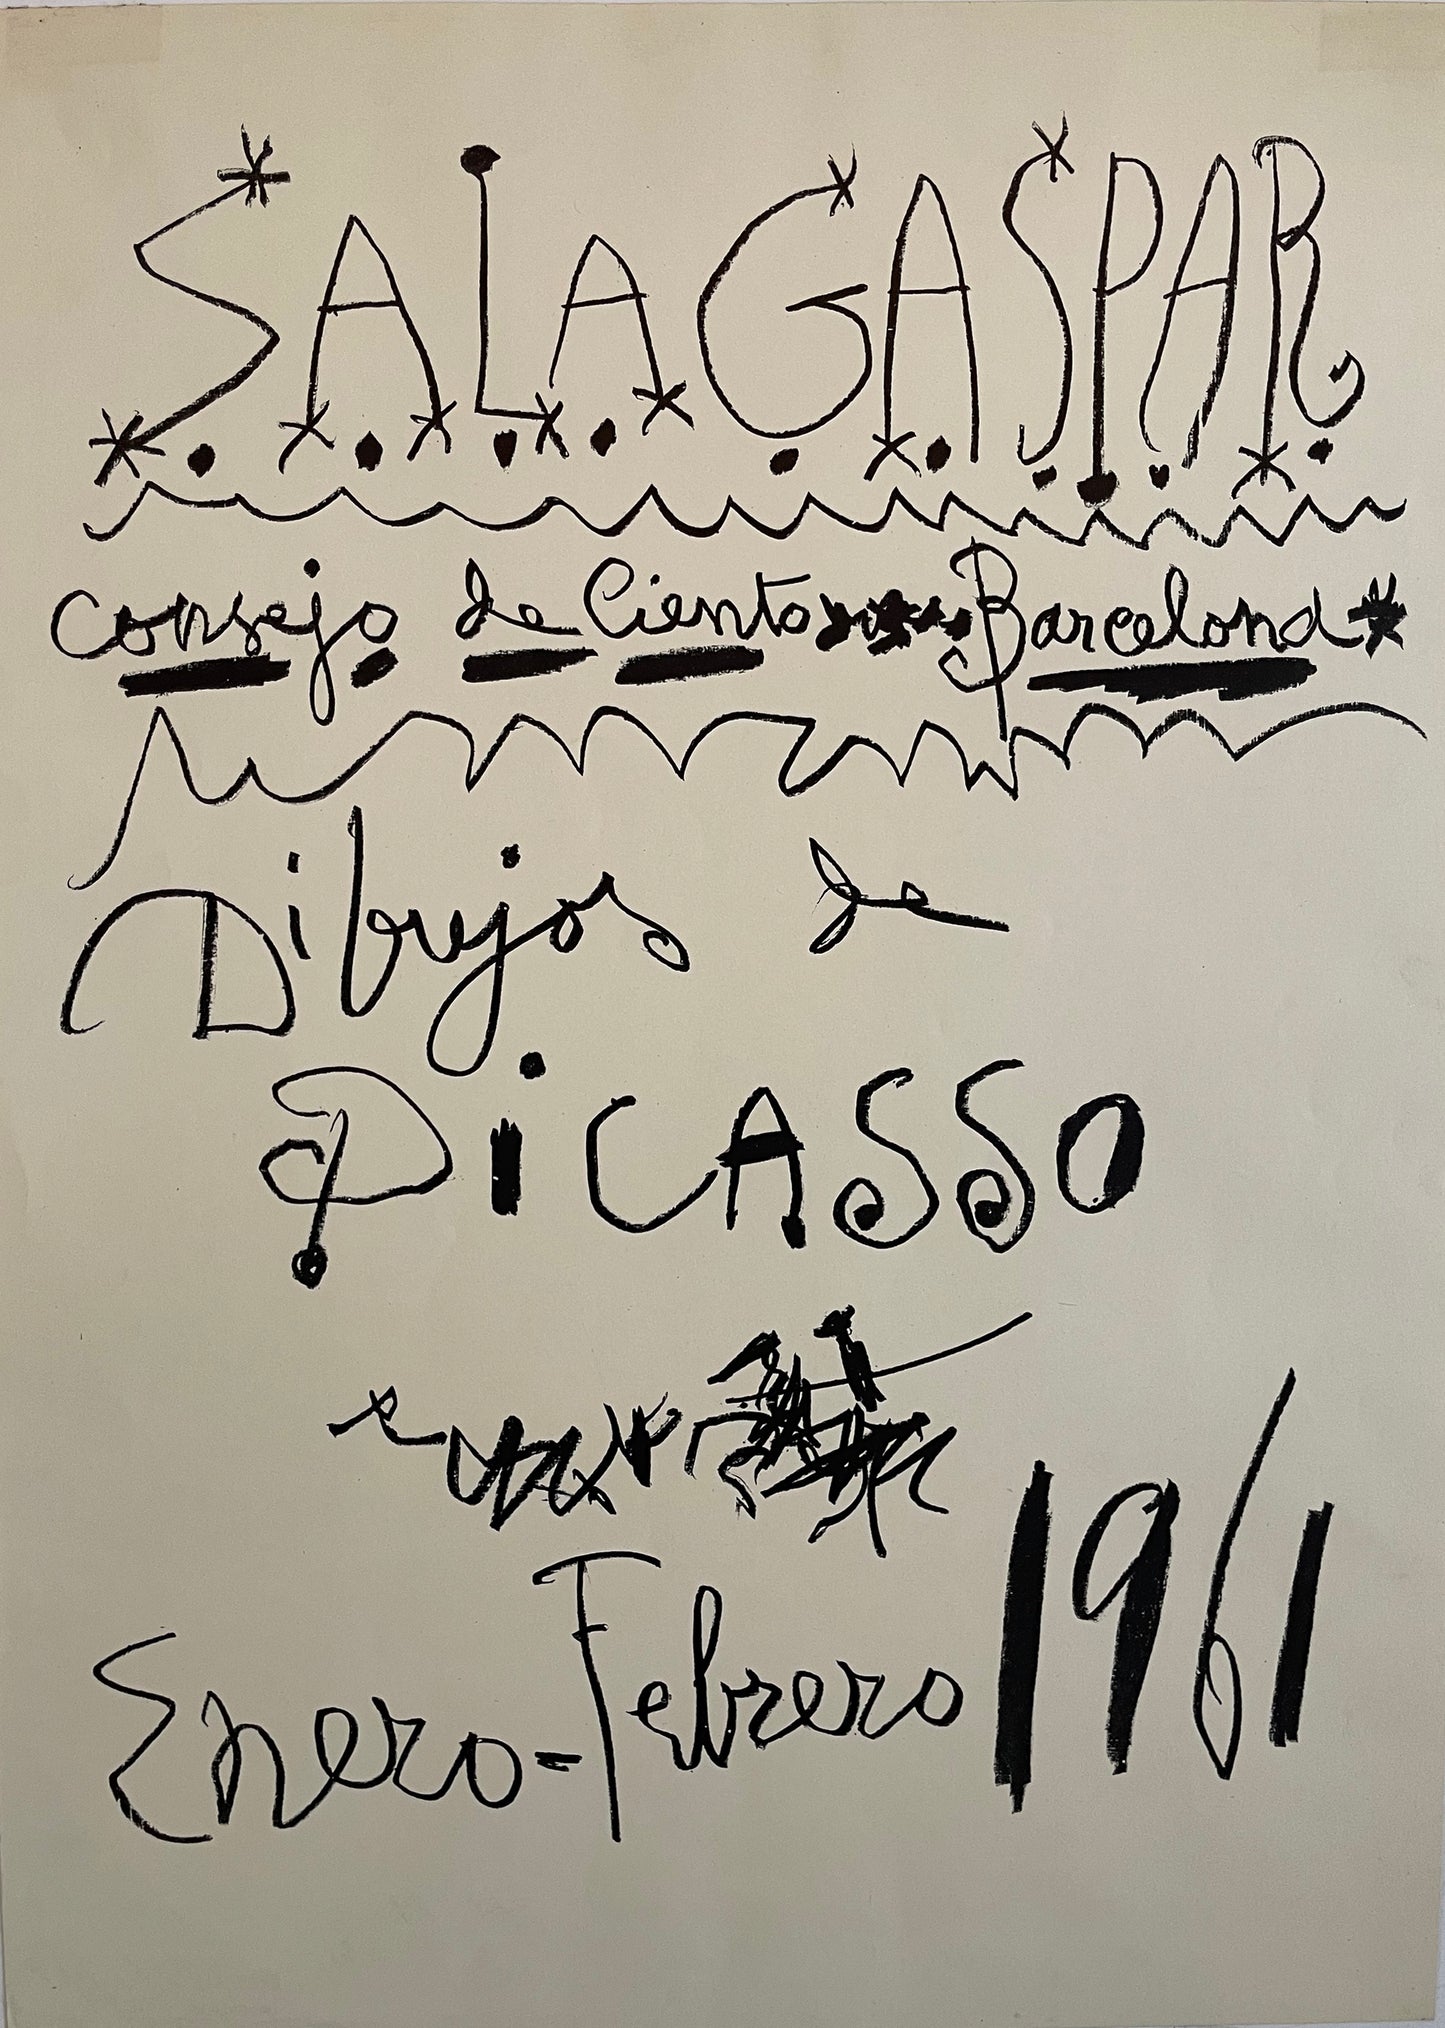 Pablo Picasso Lithograph: "Sala Gaspar", 1961